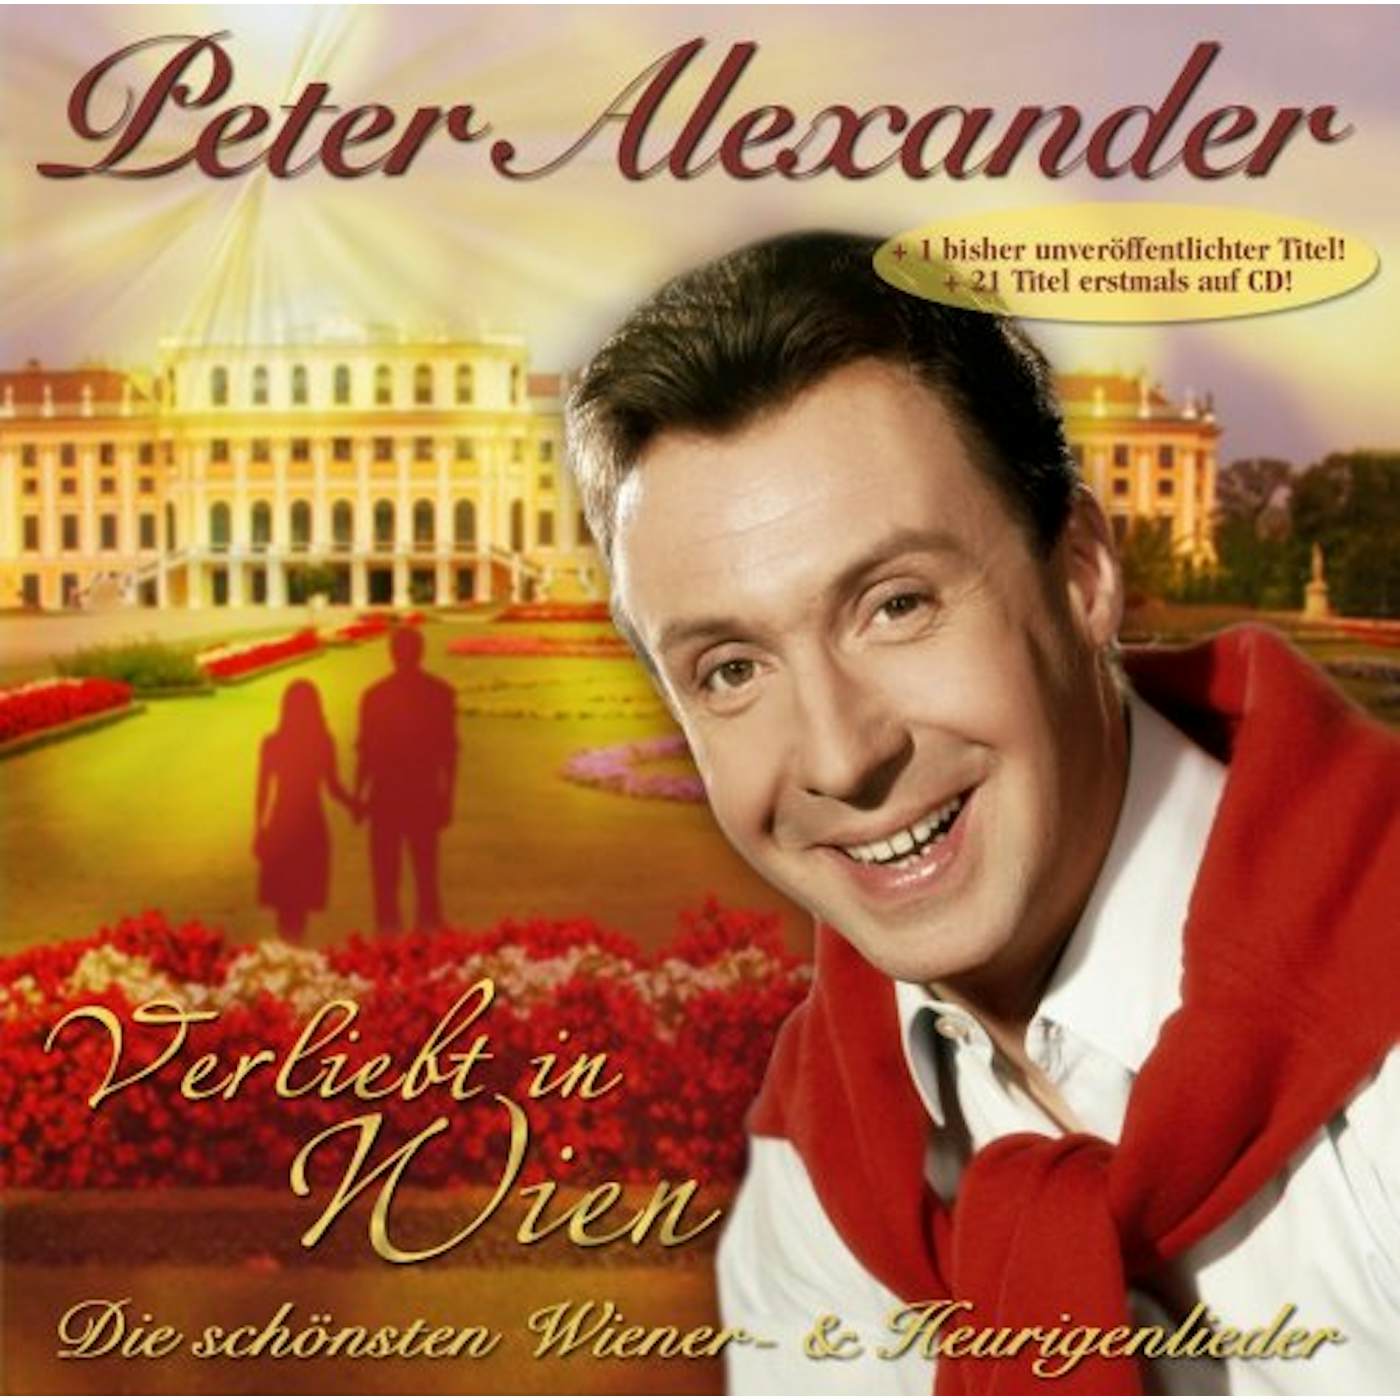 Peter Alexander VERLIEBT IN WIEN DIE SCHONSTEN WIENER- CD